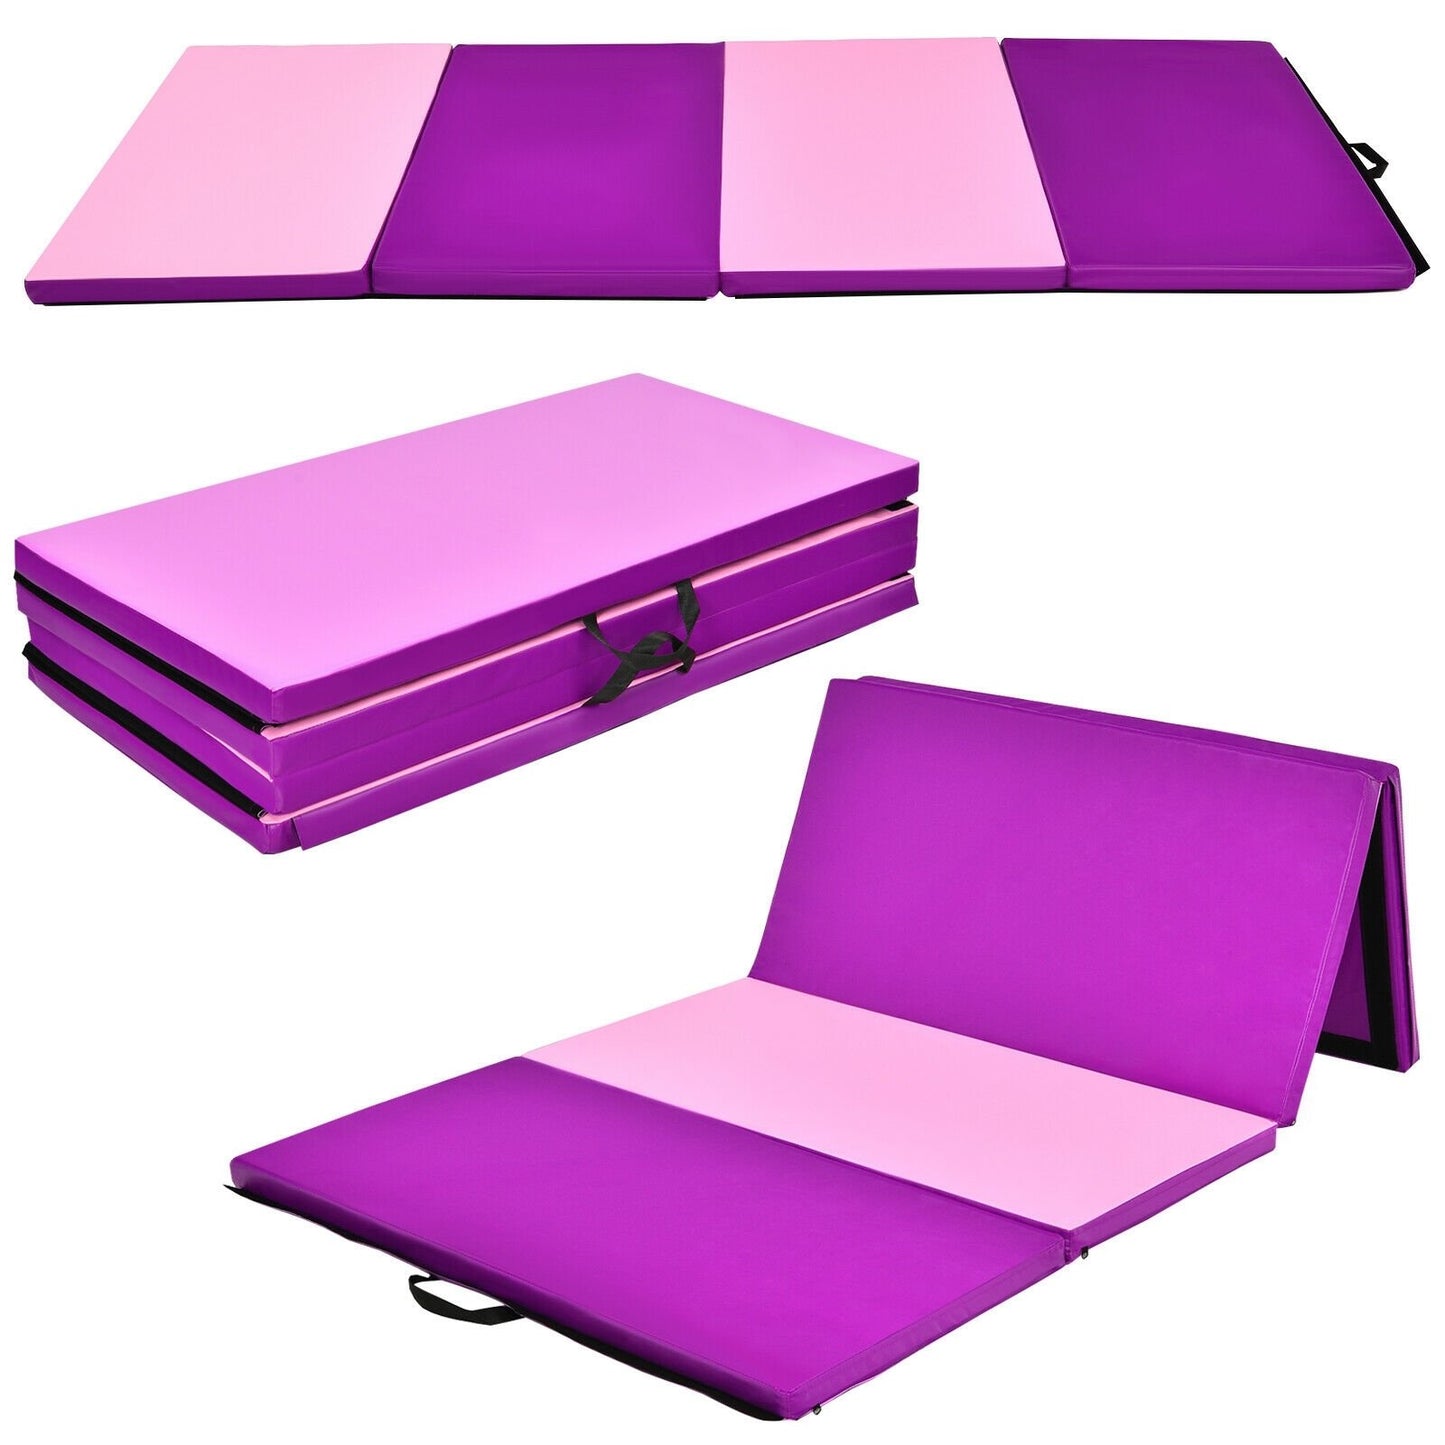 4 Feet x 8 Feet Folding Gymnastics Panel Mat with Handles Hook, Pink